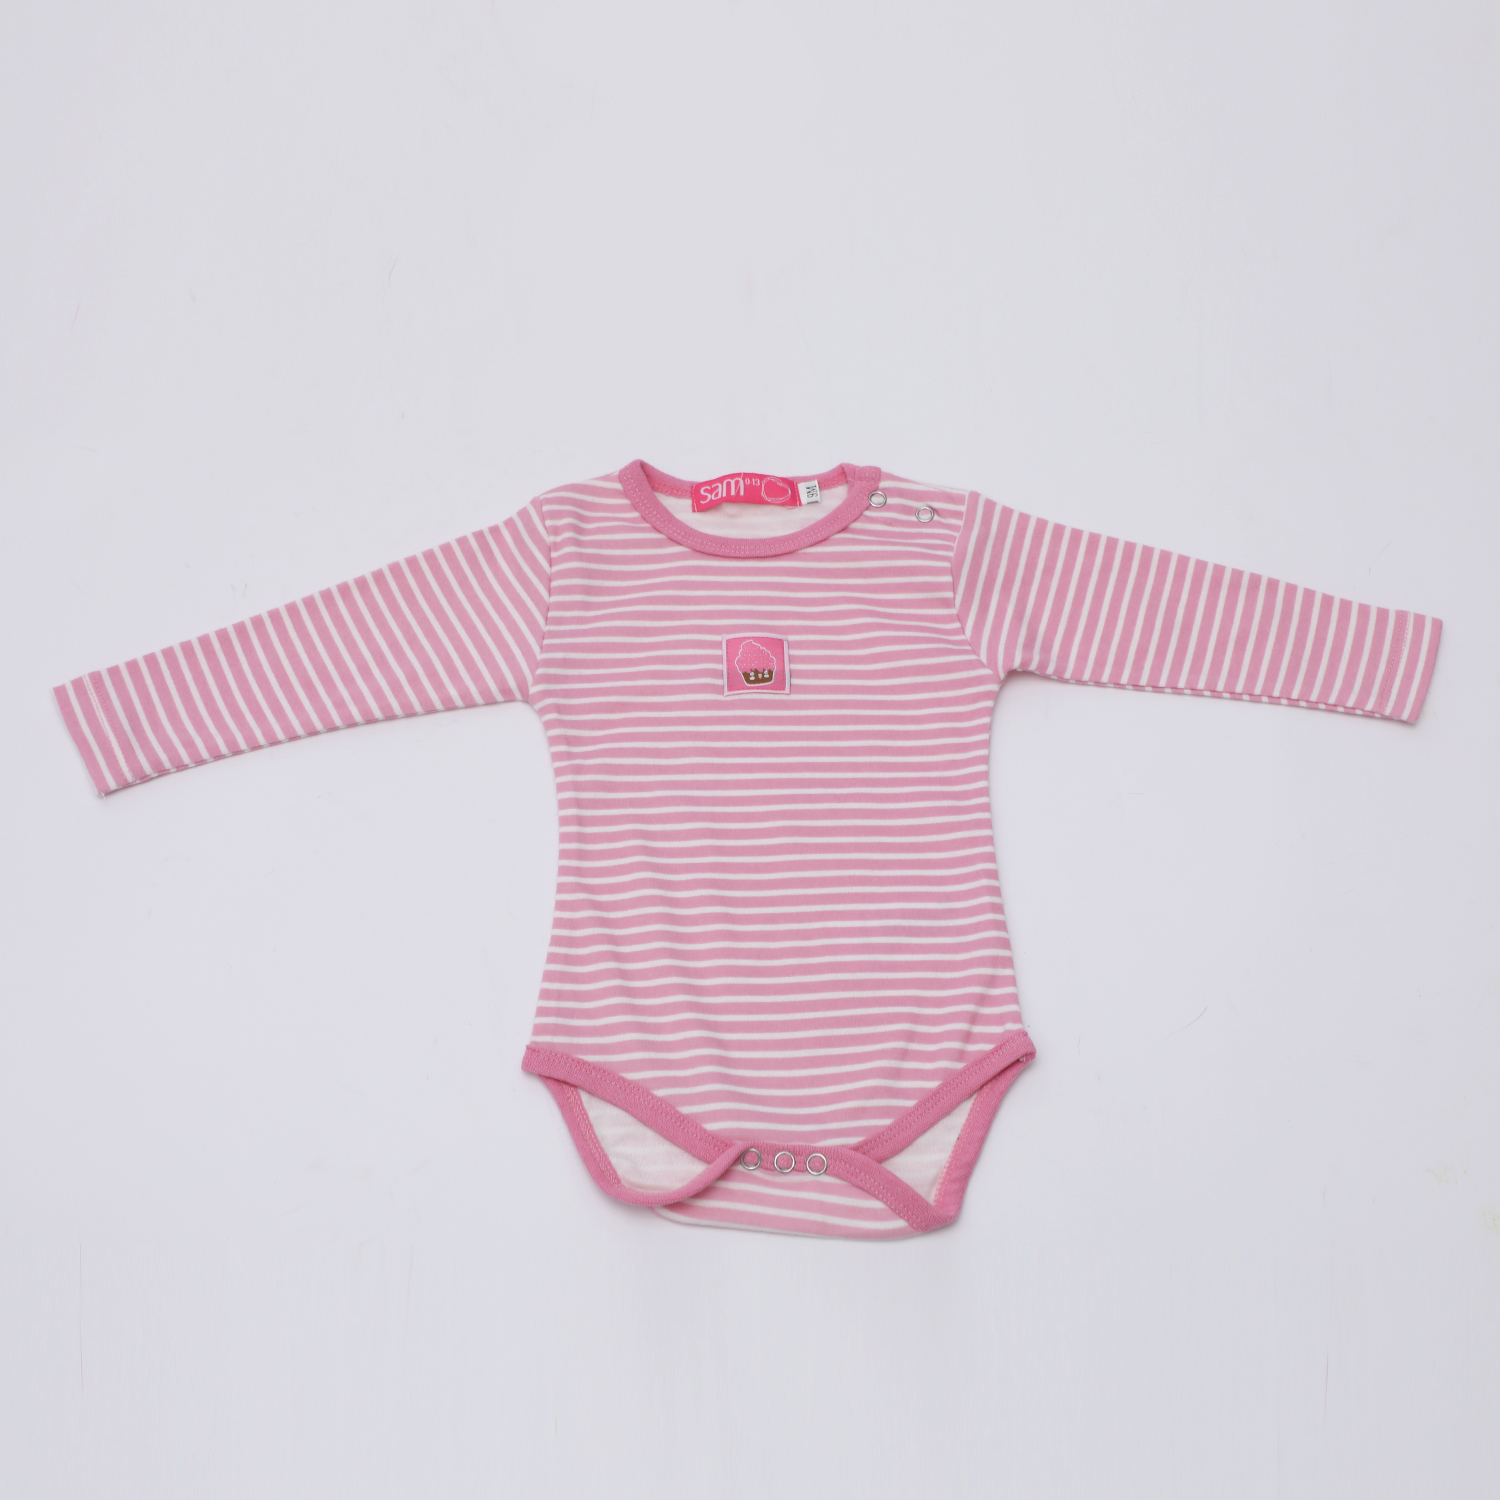 Παιδικά/Baby/Ρούχα/Φορμάκια-Κορμάκια SAM 0-13 - Βρεφικό φορμάκι SAM 0-13 ριγέ ροζ λευκό